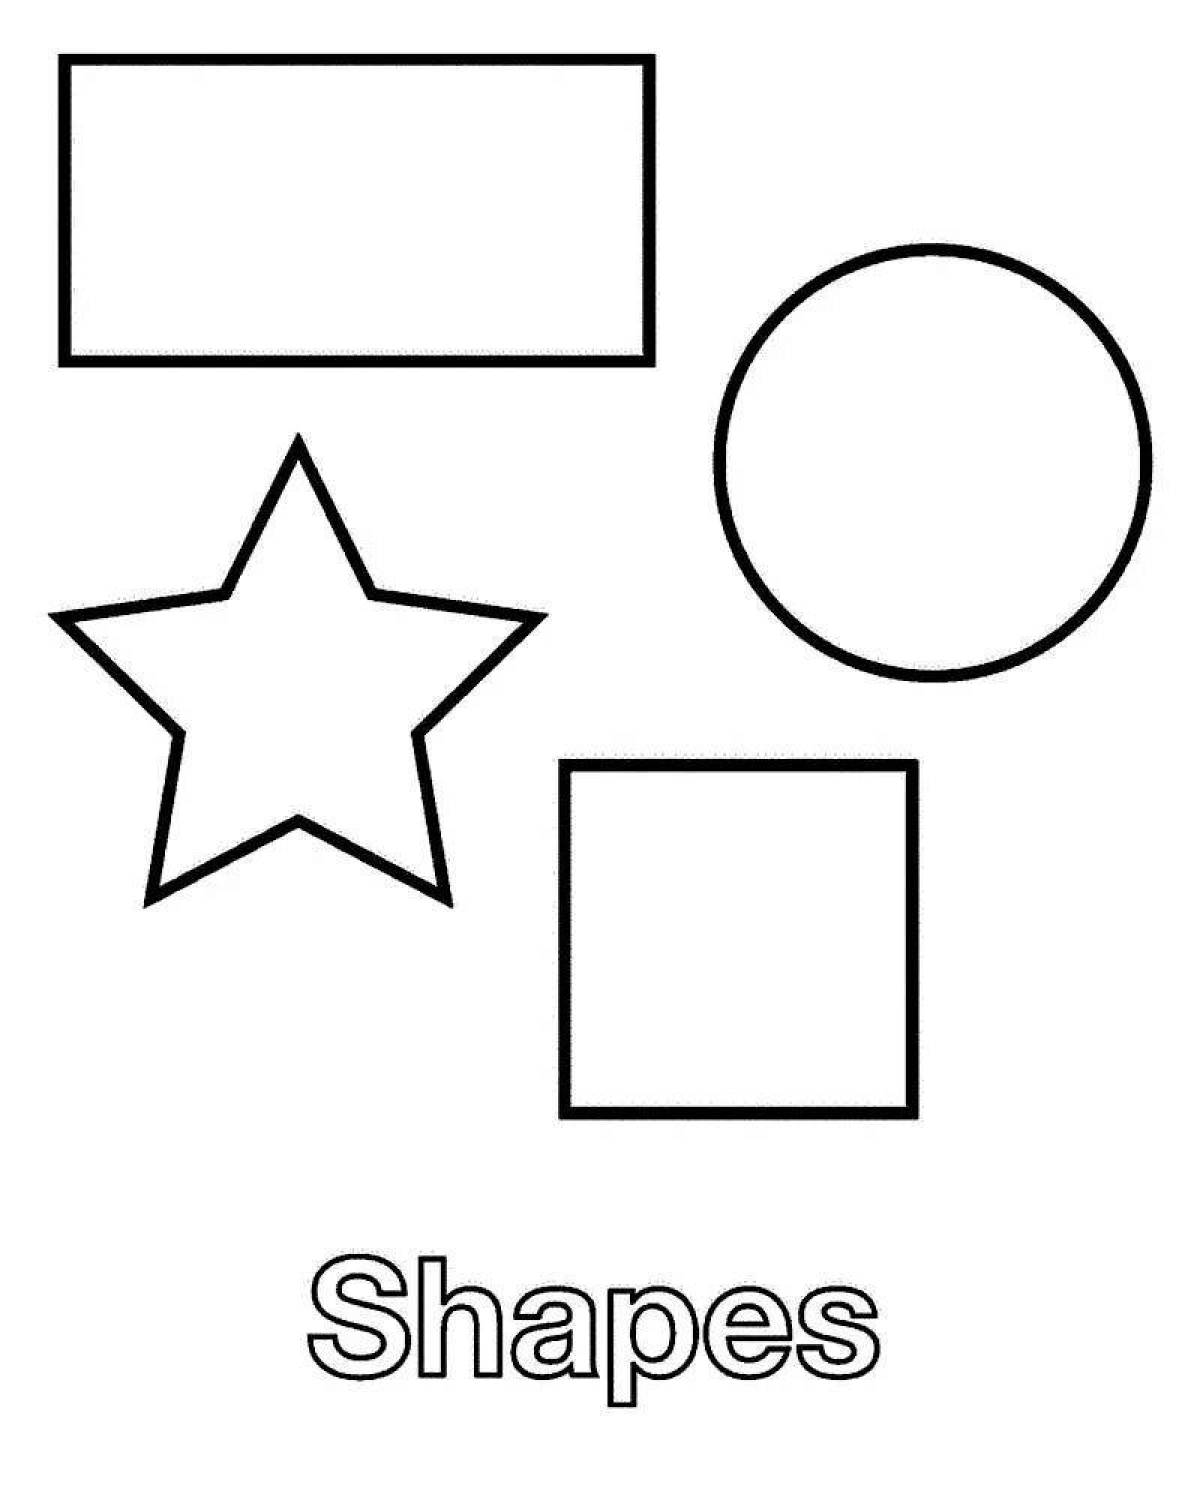 Geometric shapes #1